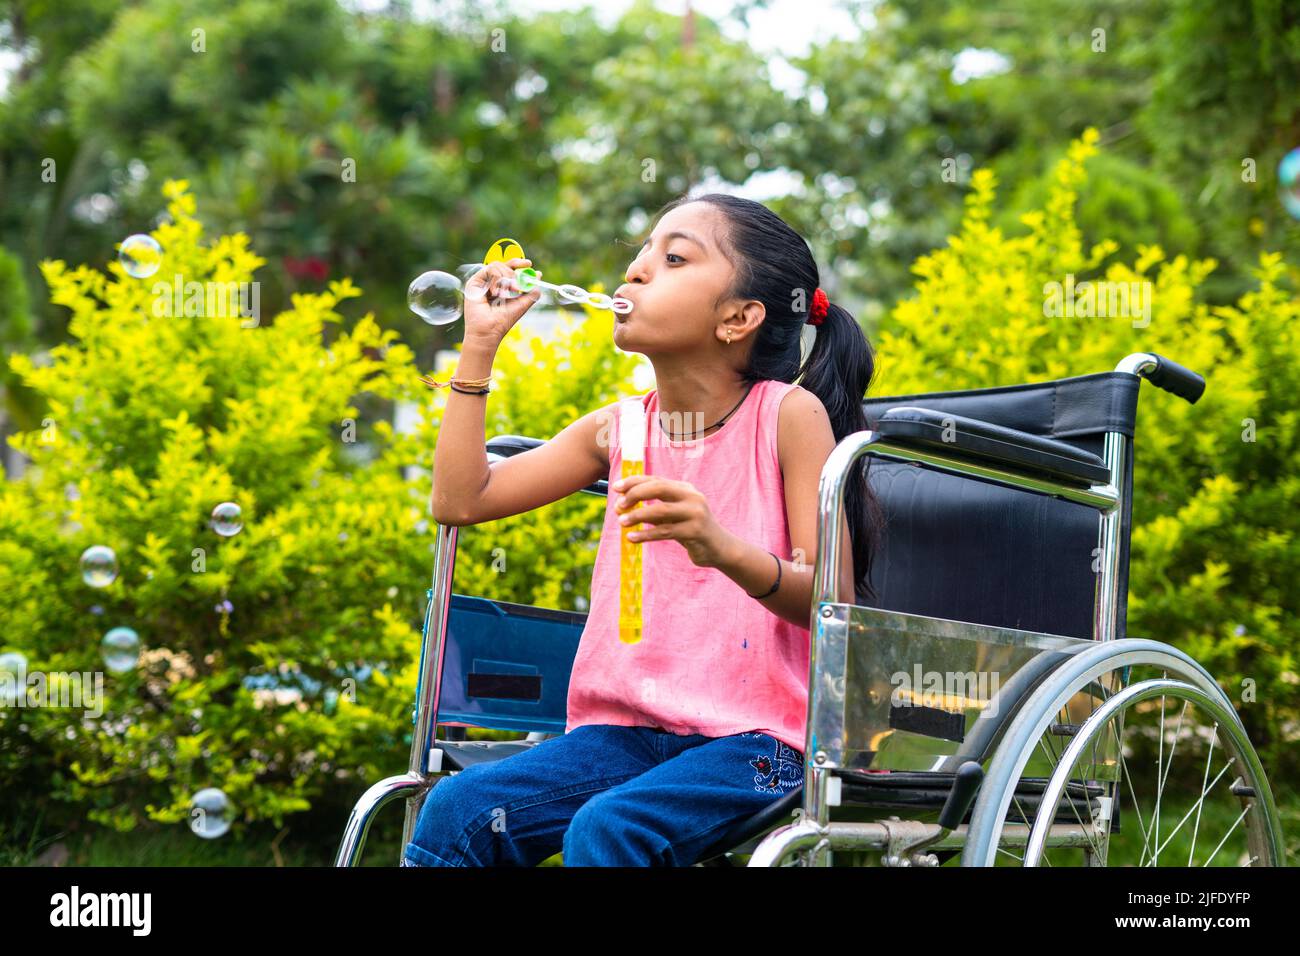 fille gaie enfant avec handicap jouer en soufflant des bulles d'eau tout en utilisant le fauteuil roulant au parc - concept d'activités ludiques, bonheur et Banque D'Images